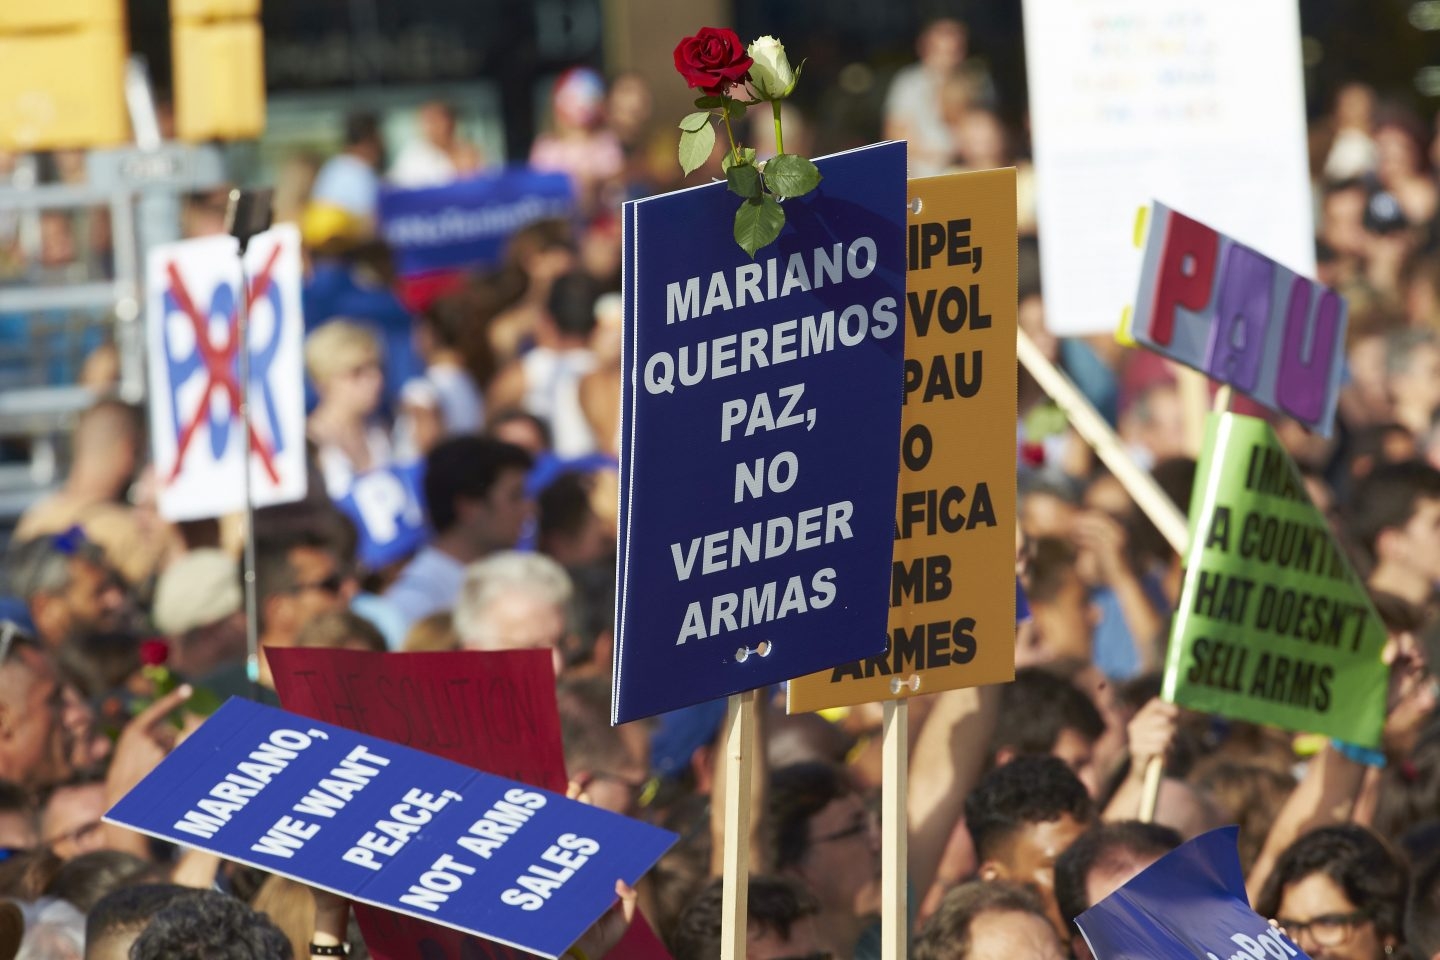 Imagen de las pancartas durante la manifestación de Barcelona con mensajes al Rey Felipe VI y Mariano Rajoy.